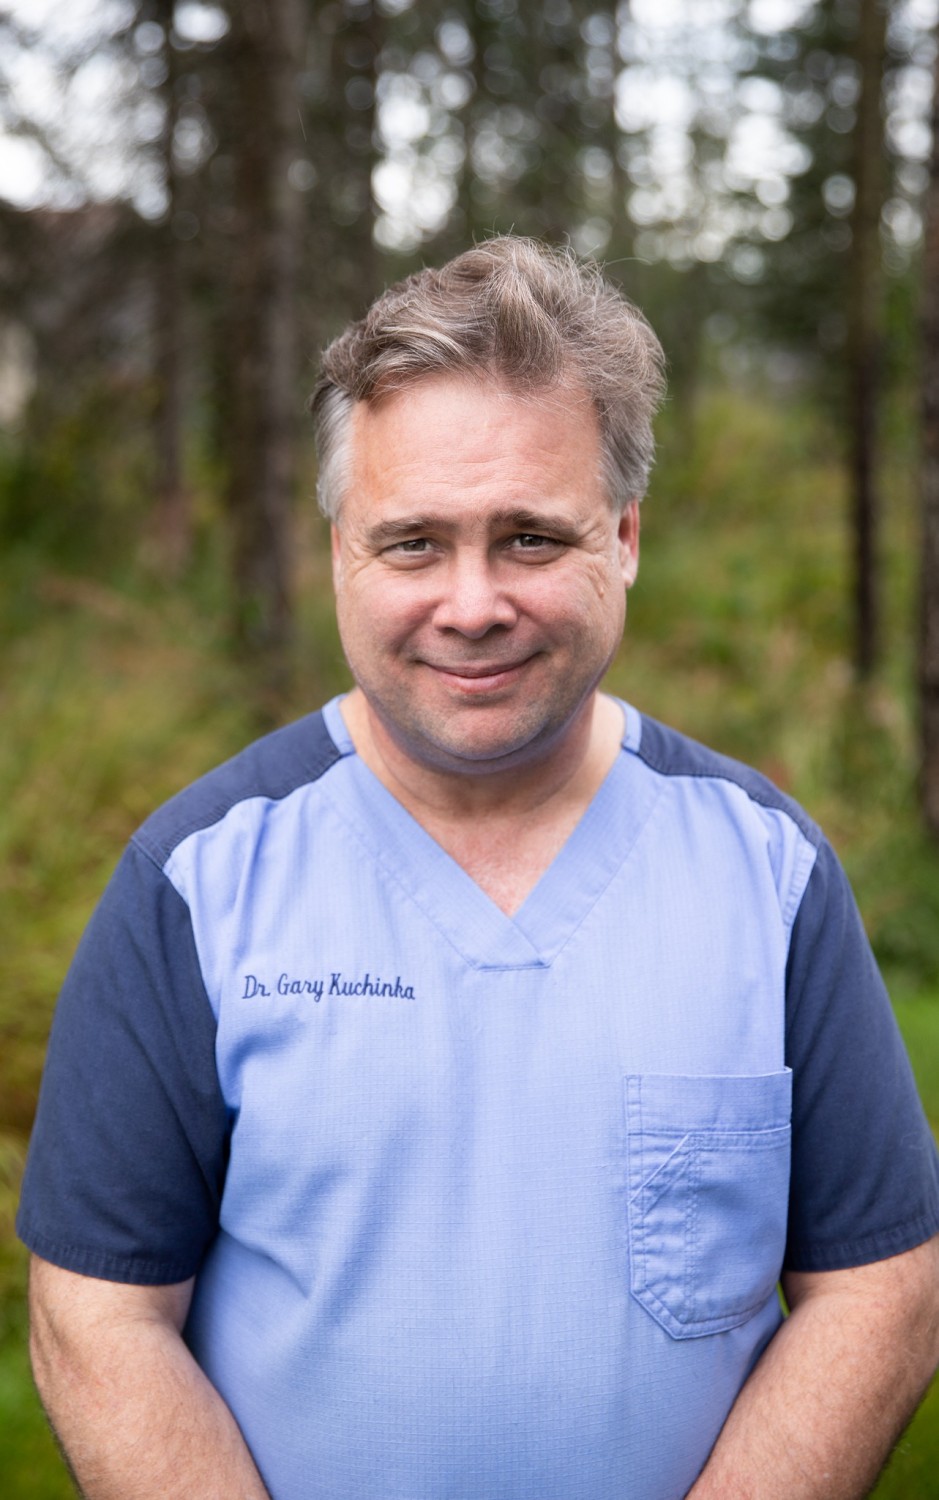 Dr. Gary Kuchinka